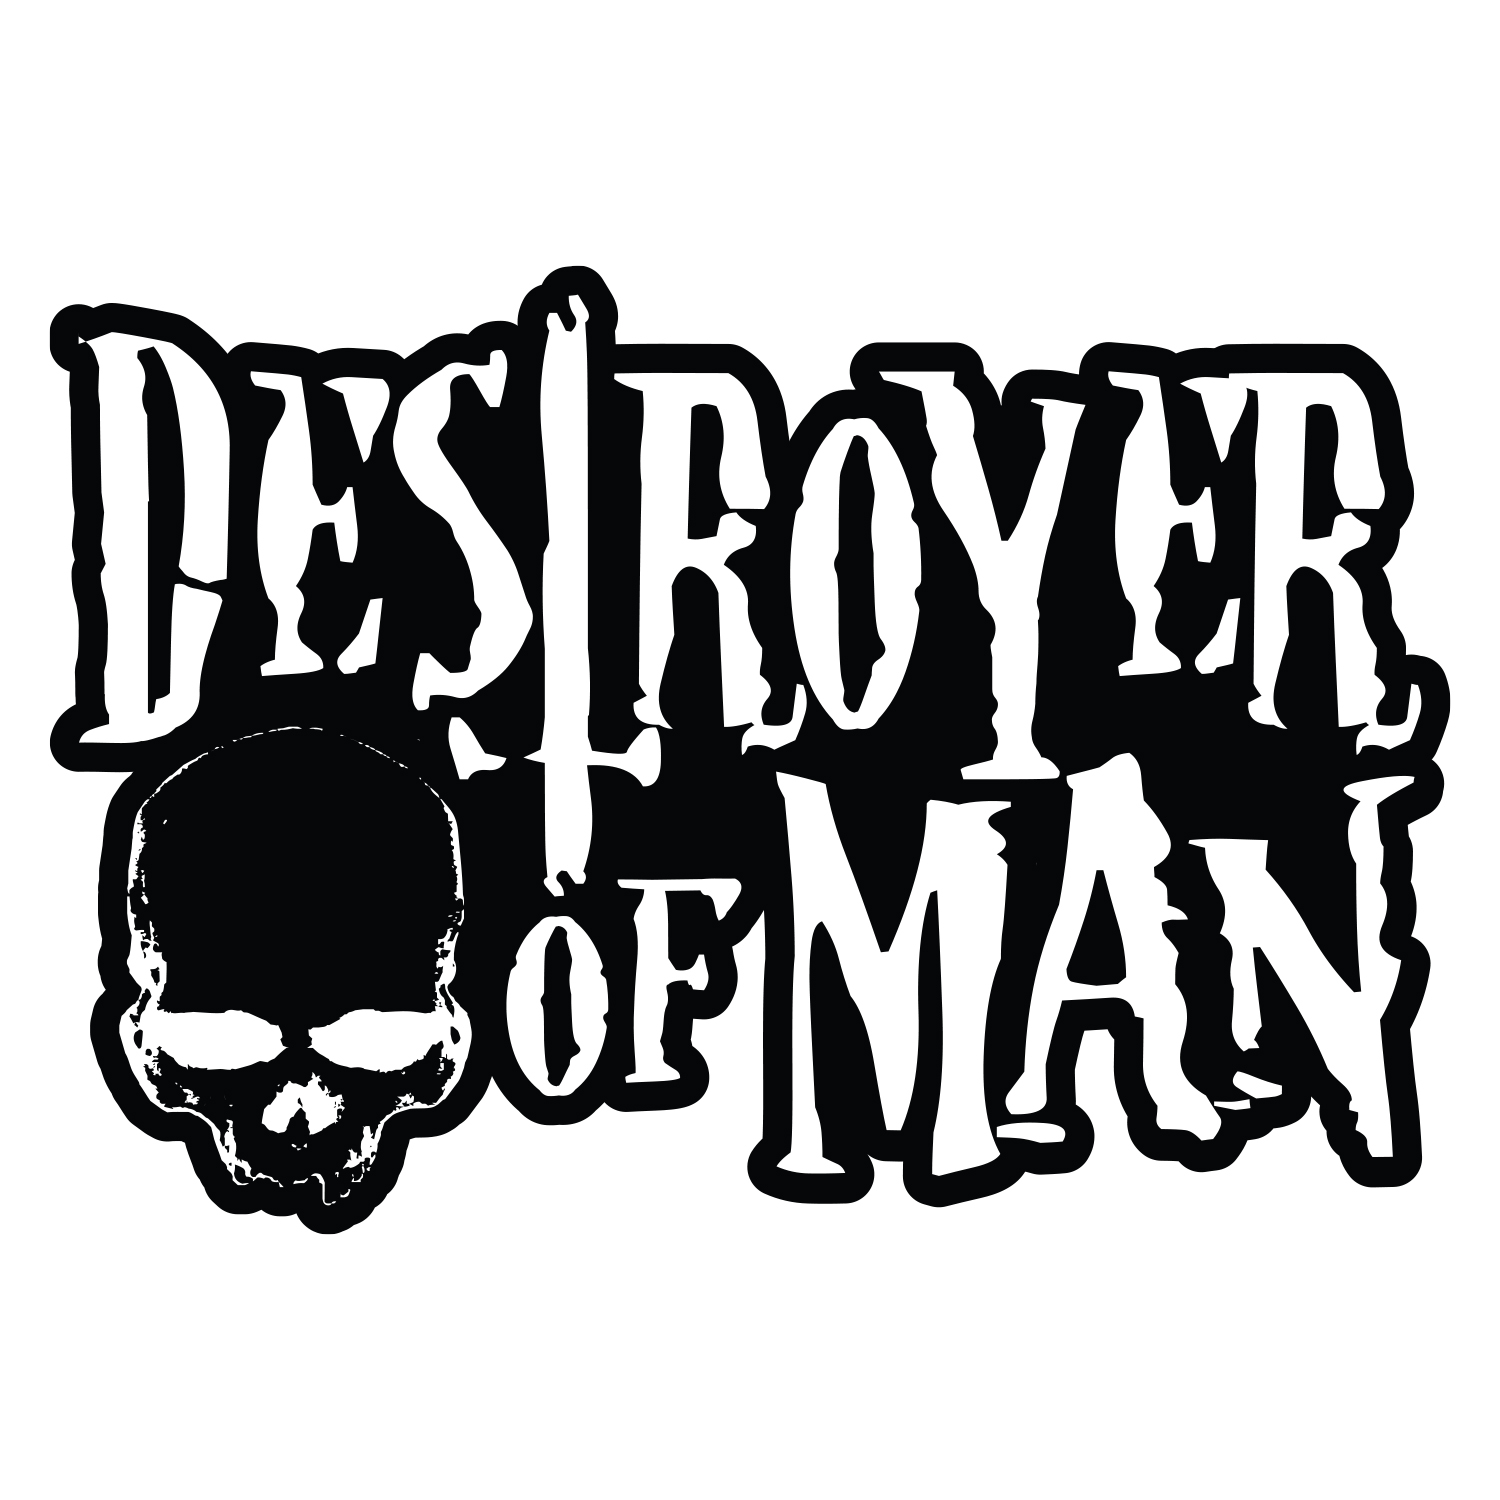 Destoryer Of Man logo